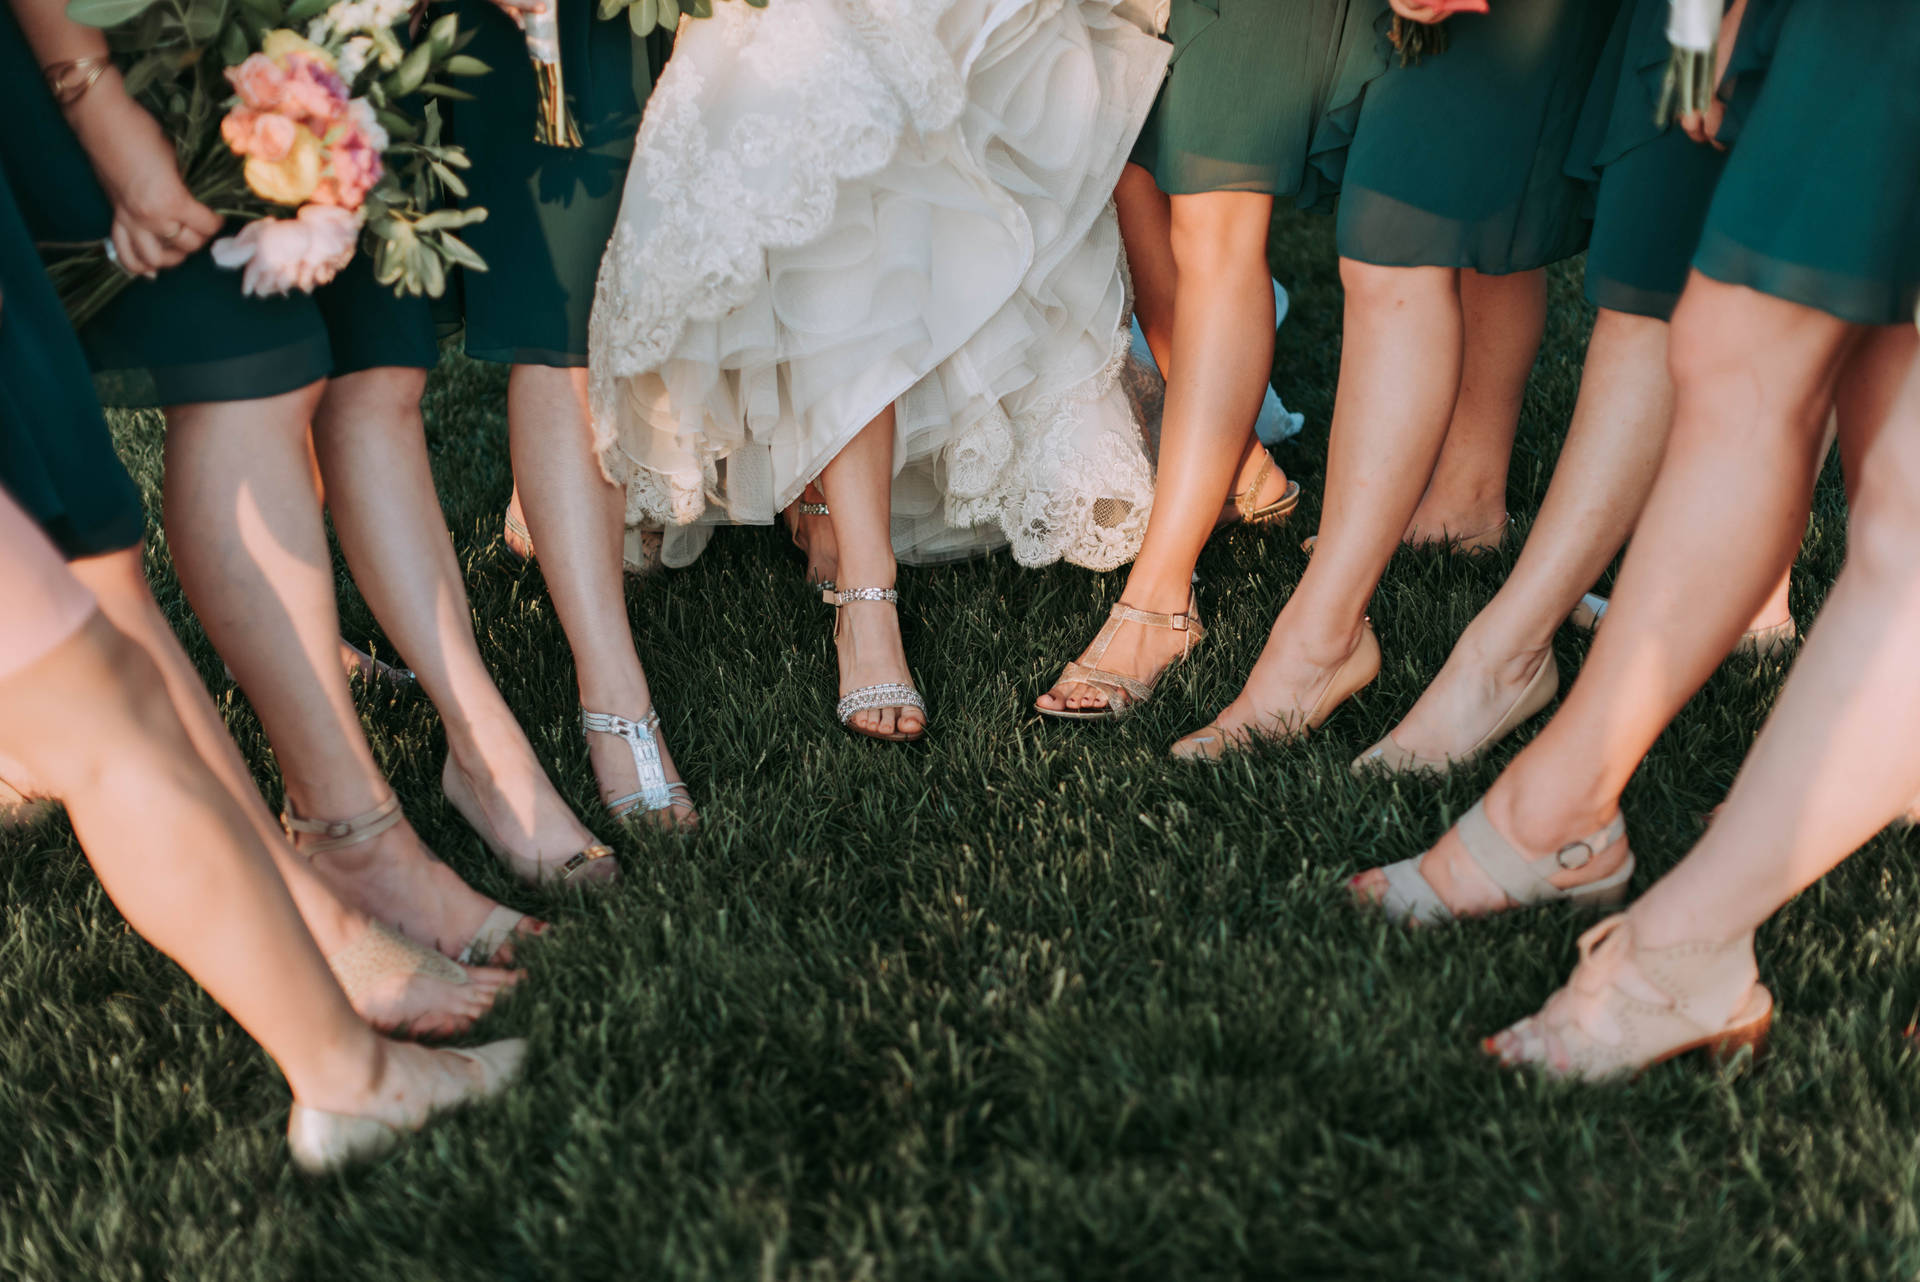 Bridesmaids High Heels In Grass Wallpaper